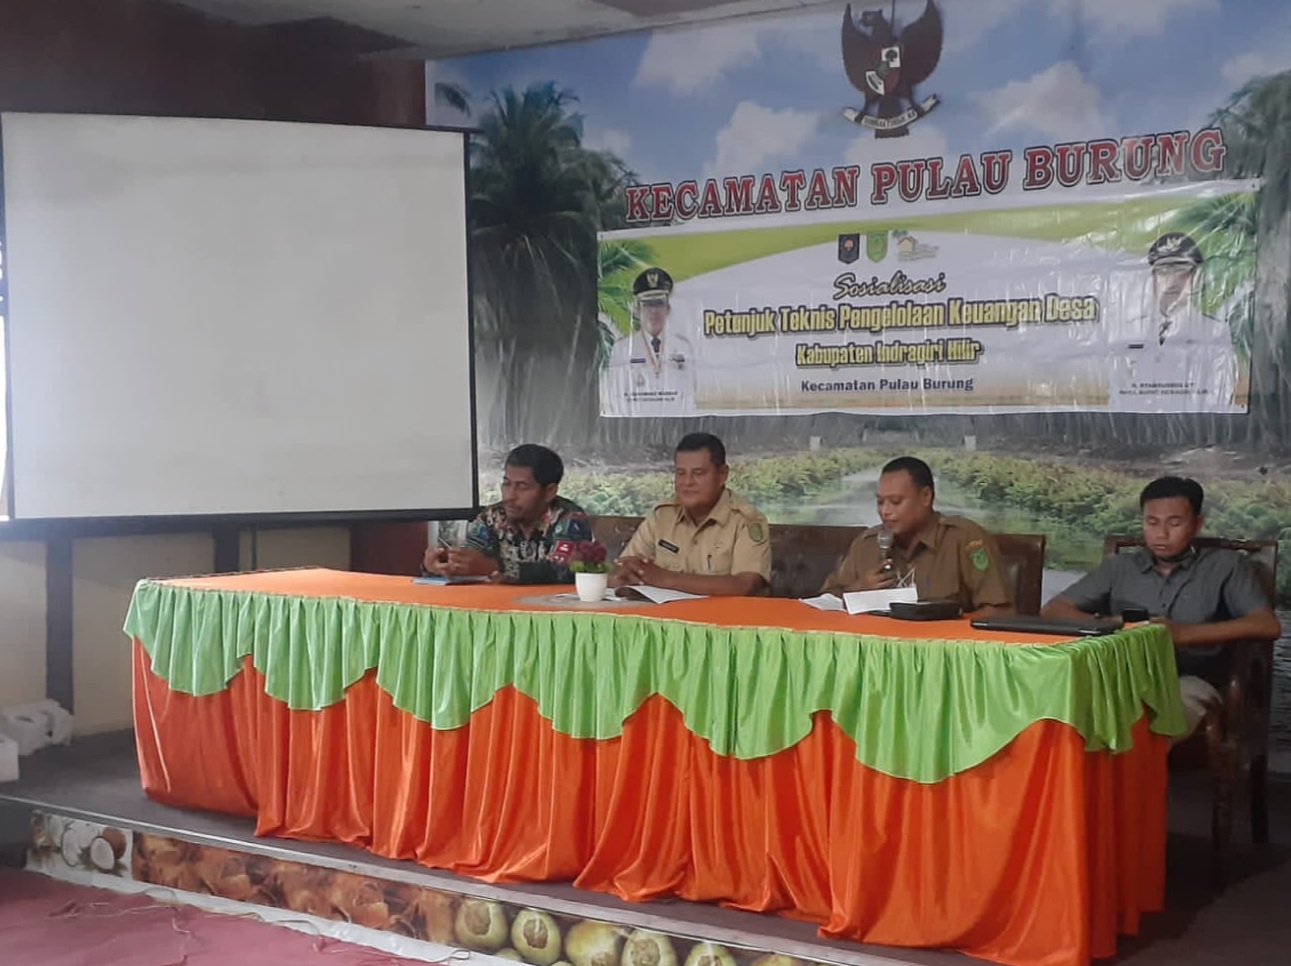 Faskab DMIJ Plus Terintegrasi dan Dinas PMD Inhil Gelar Sosialisasi ke 14 Desa se-Kecamatan Pulau Burung